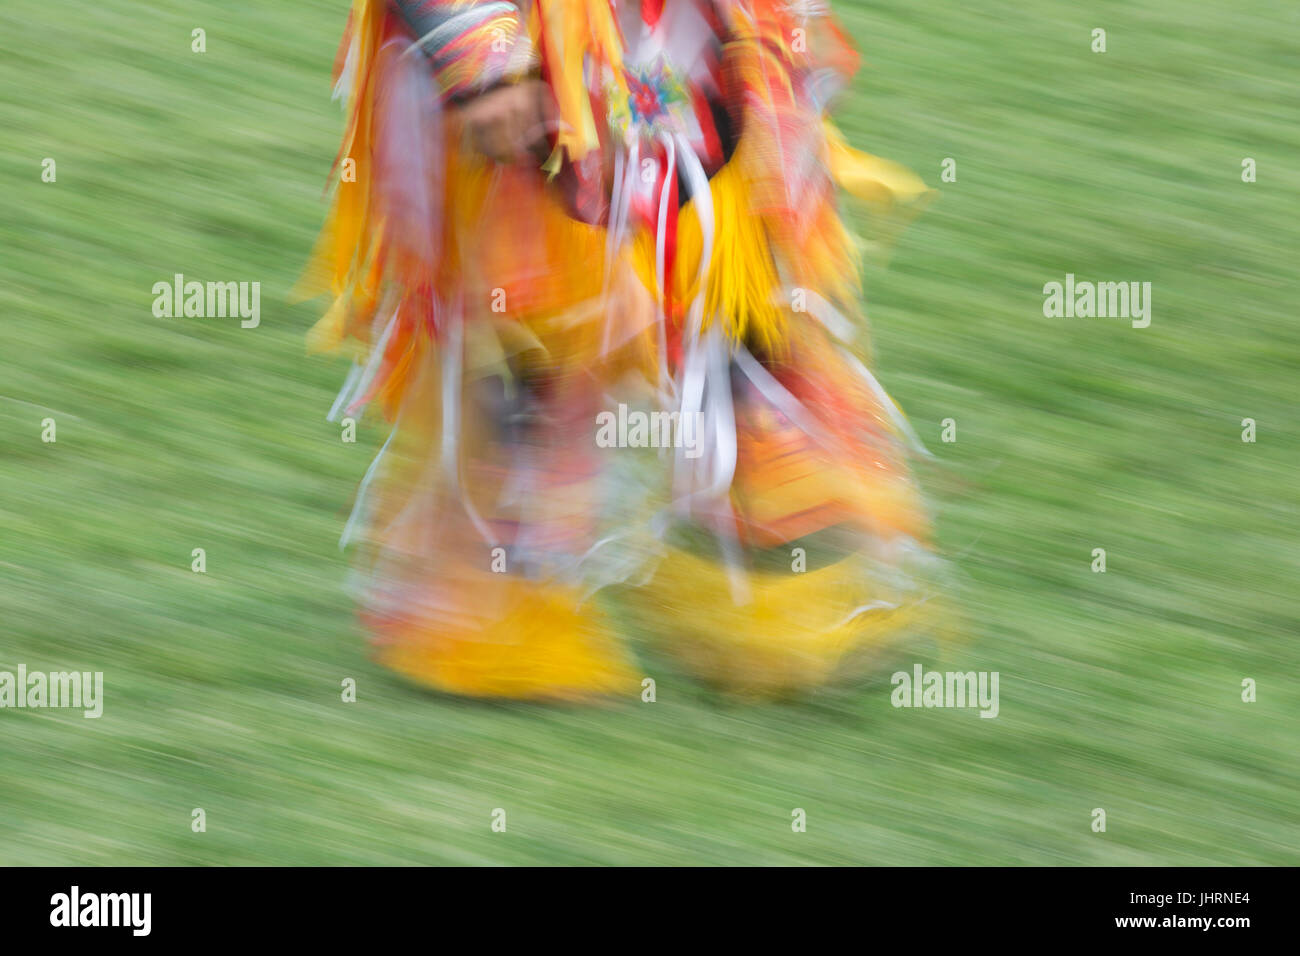 Les pieds des hommes autochtones dansent dans le parc de Prince's Island de la fête du Canada. Gros plan, mouvement flou. Banque D'Images